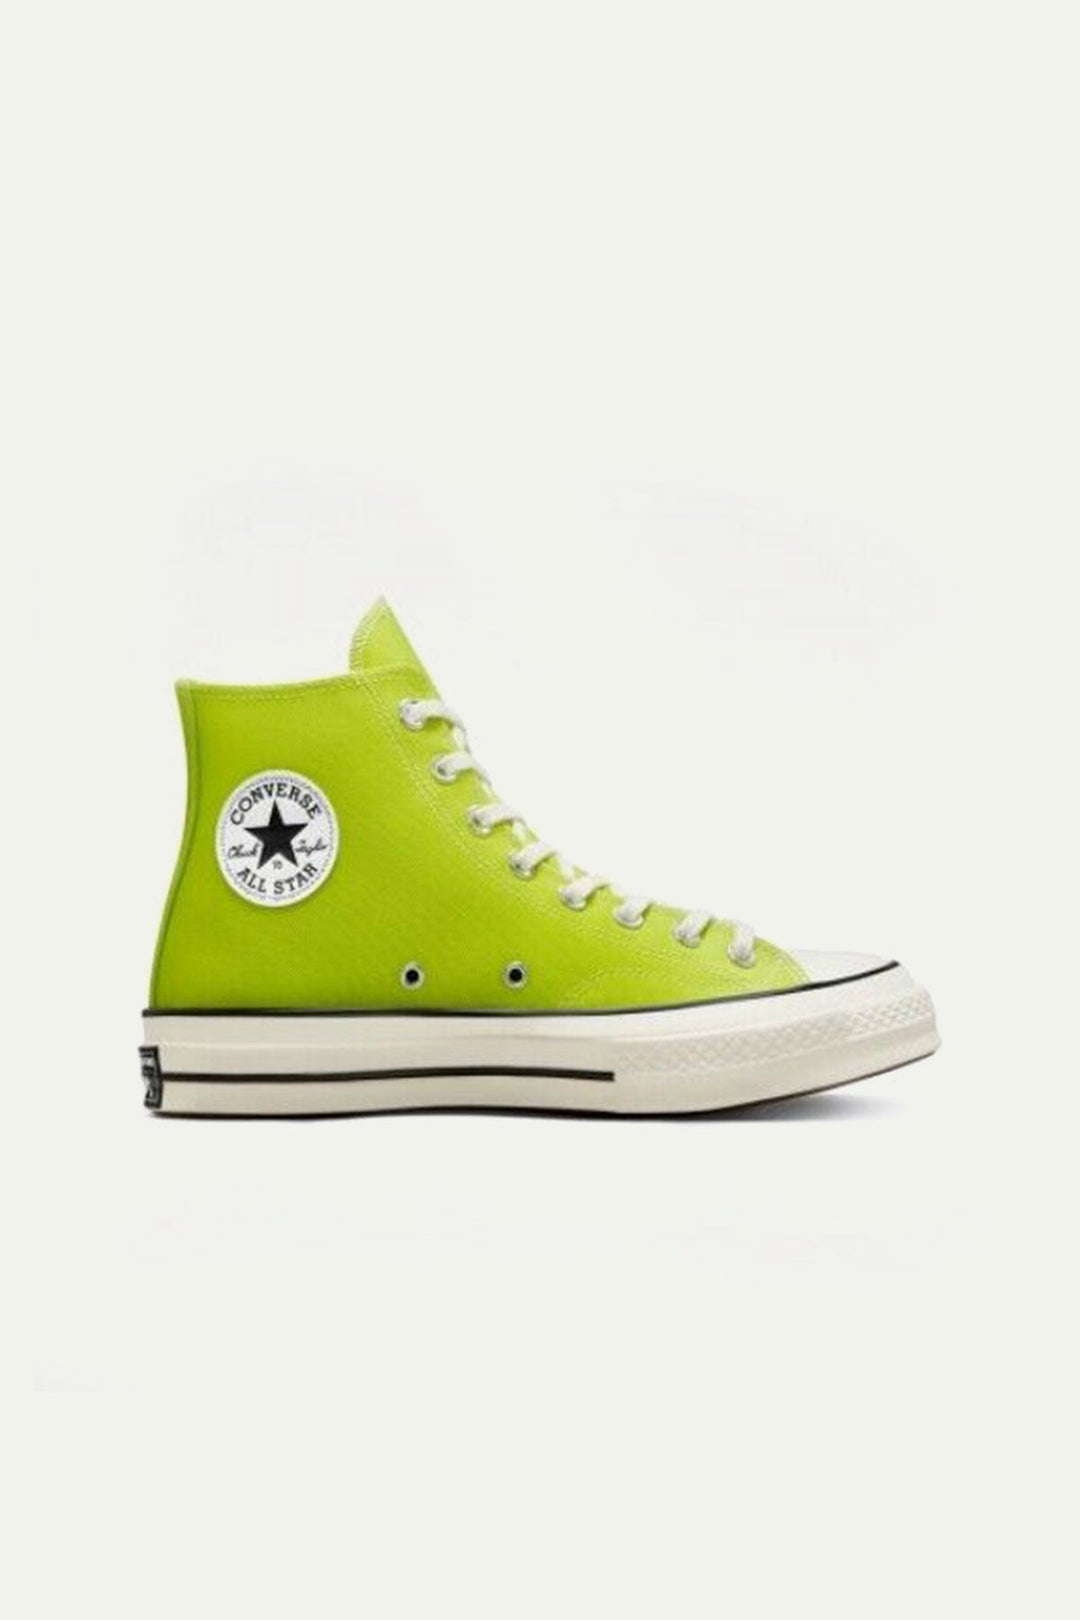 נעלי CHUCK 70 גבוהות בצבע ירוק ליים - Converse